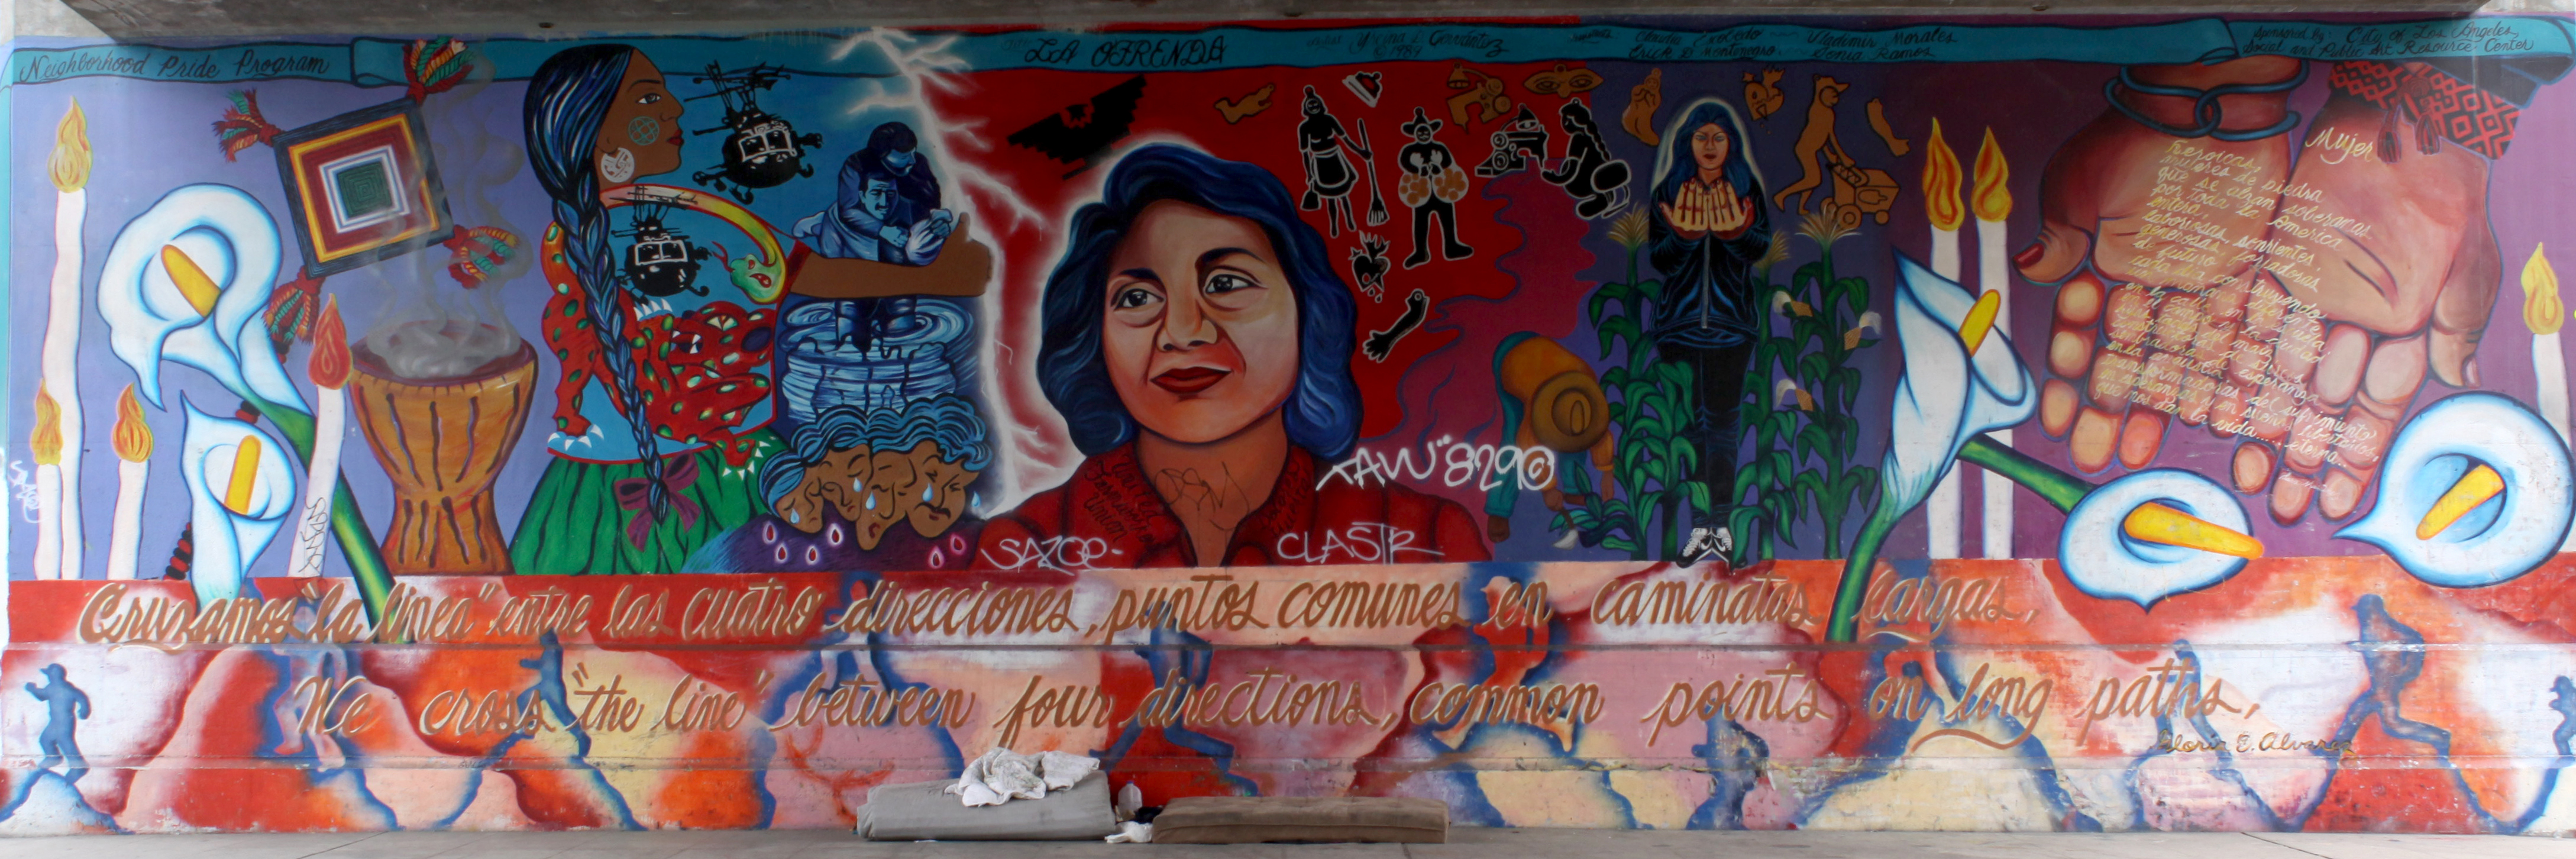 Dolores Huerta Mural by Yreina Cervántez